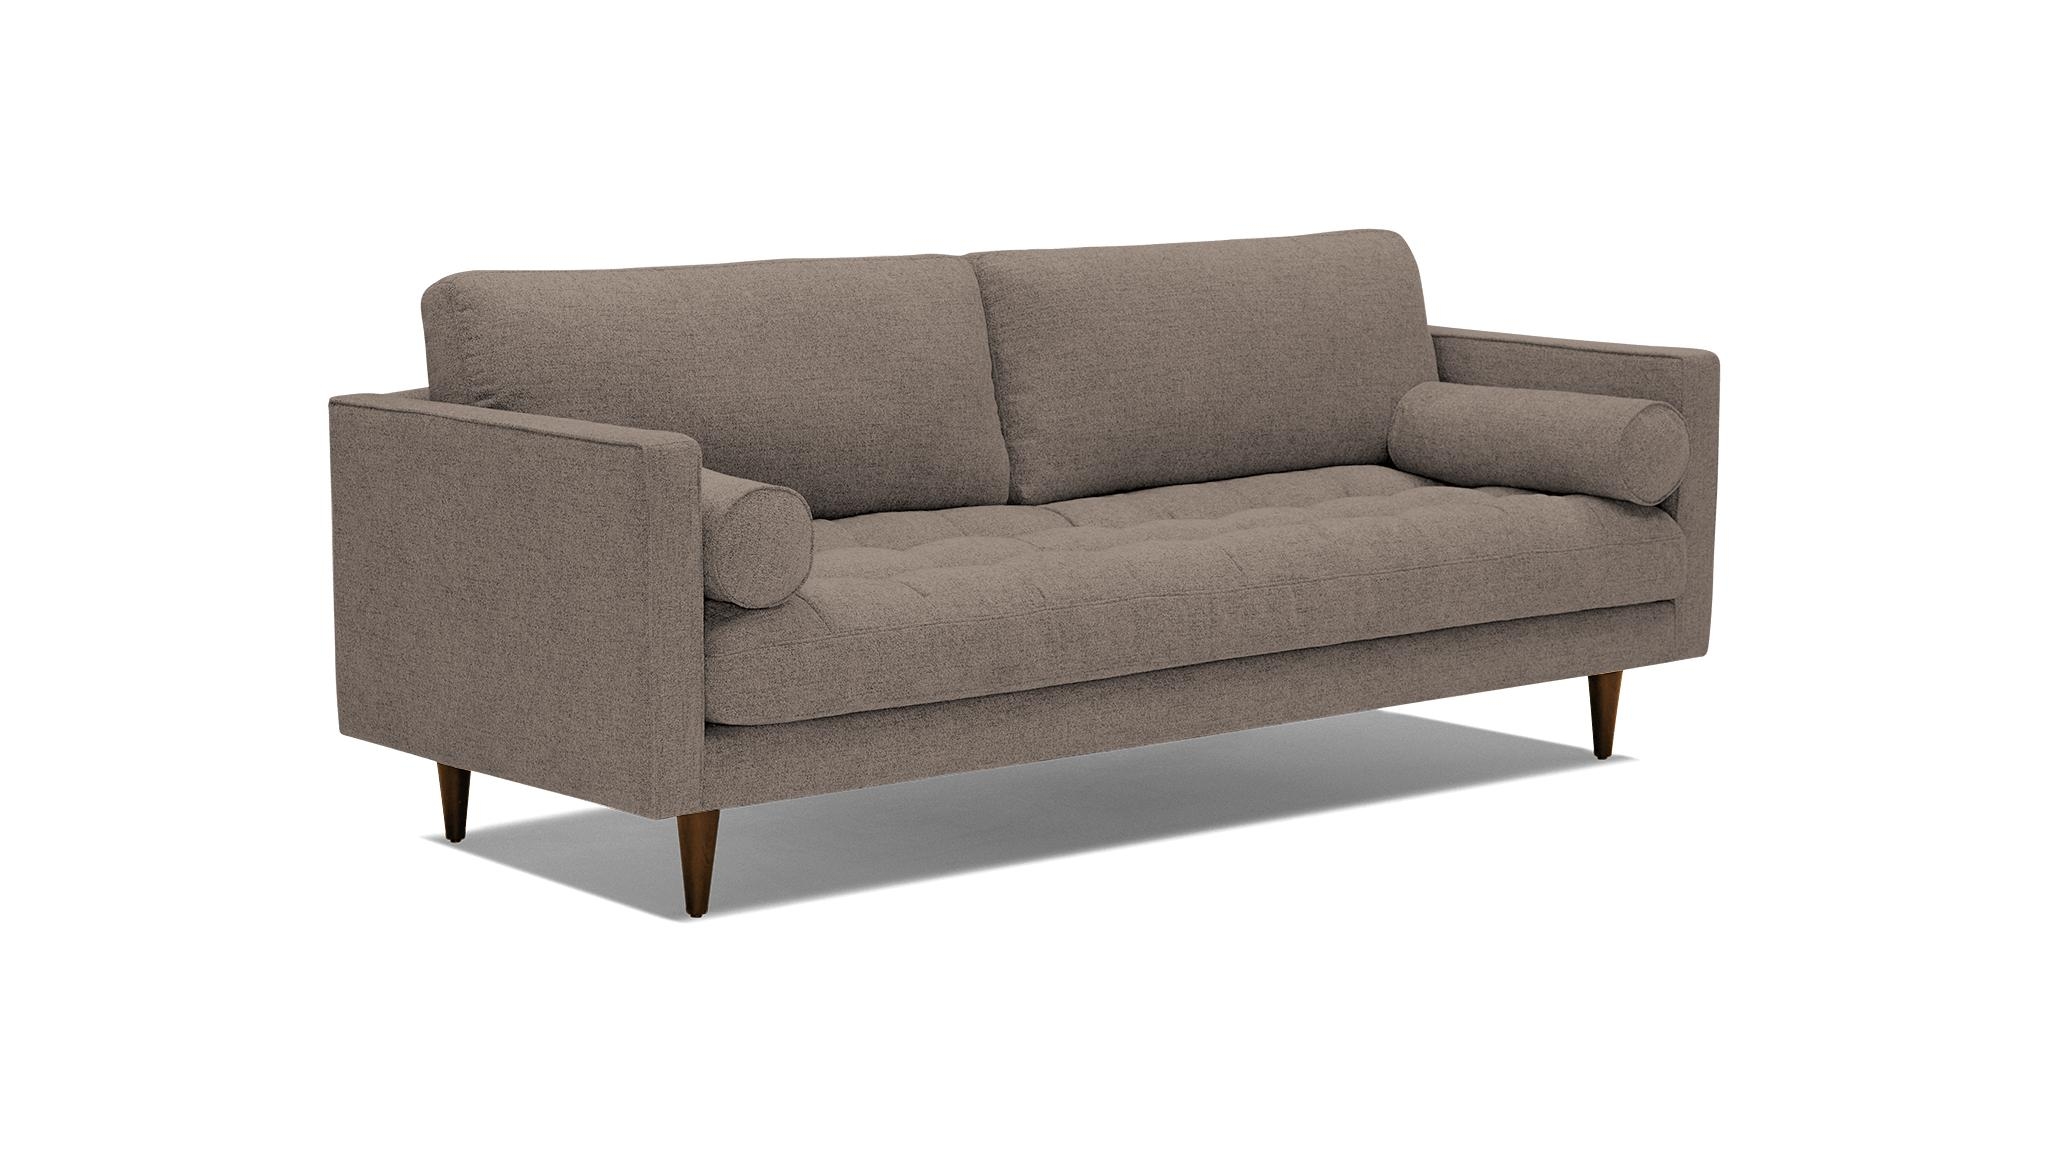 Brown Briar Mid Century Modern Sofa - Dawson Brindle - Mocha - Image 1